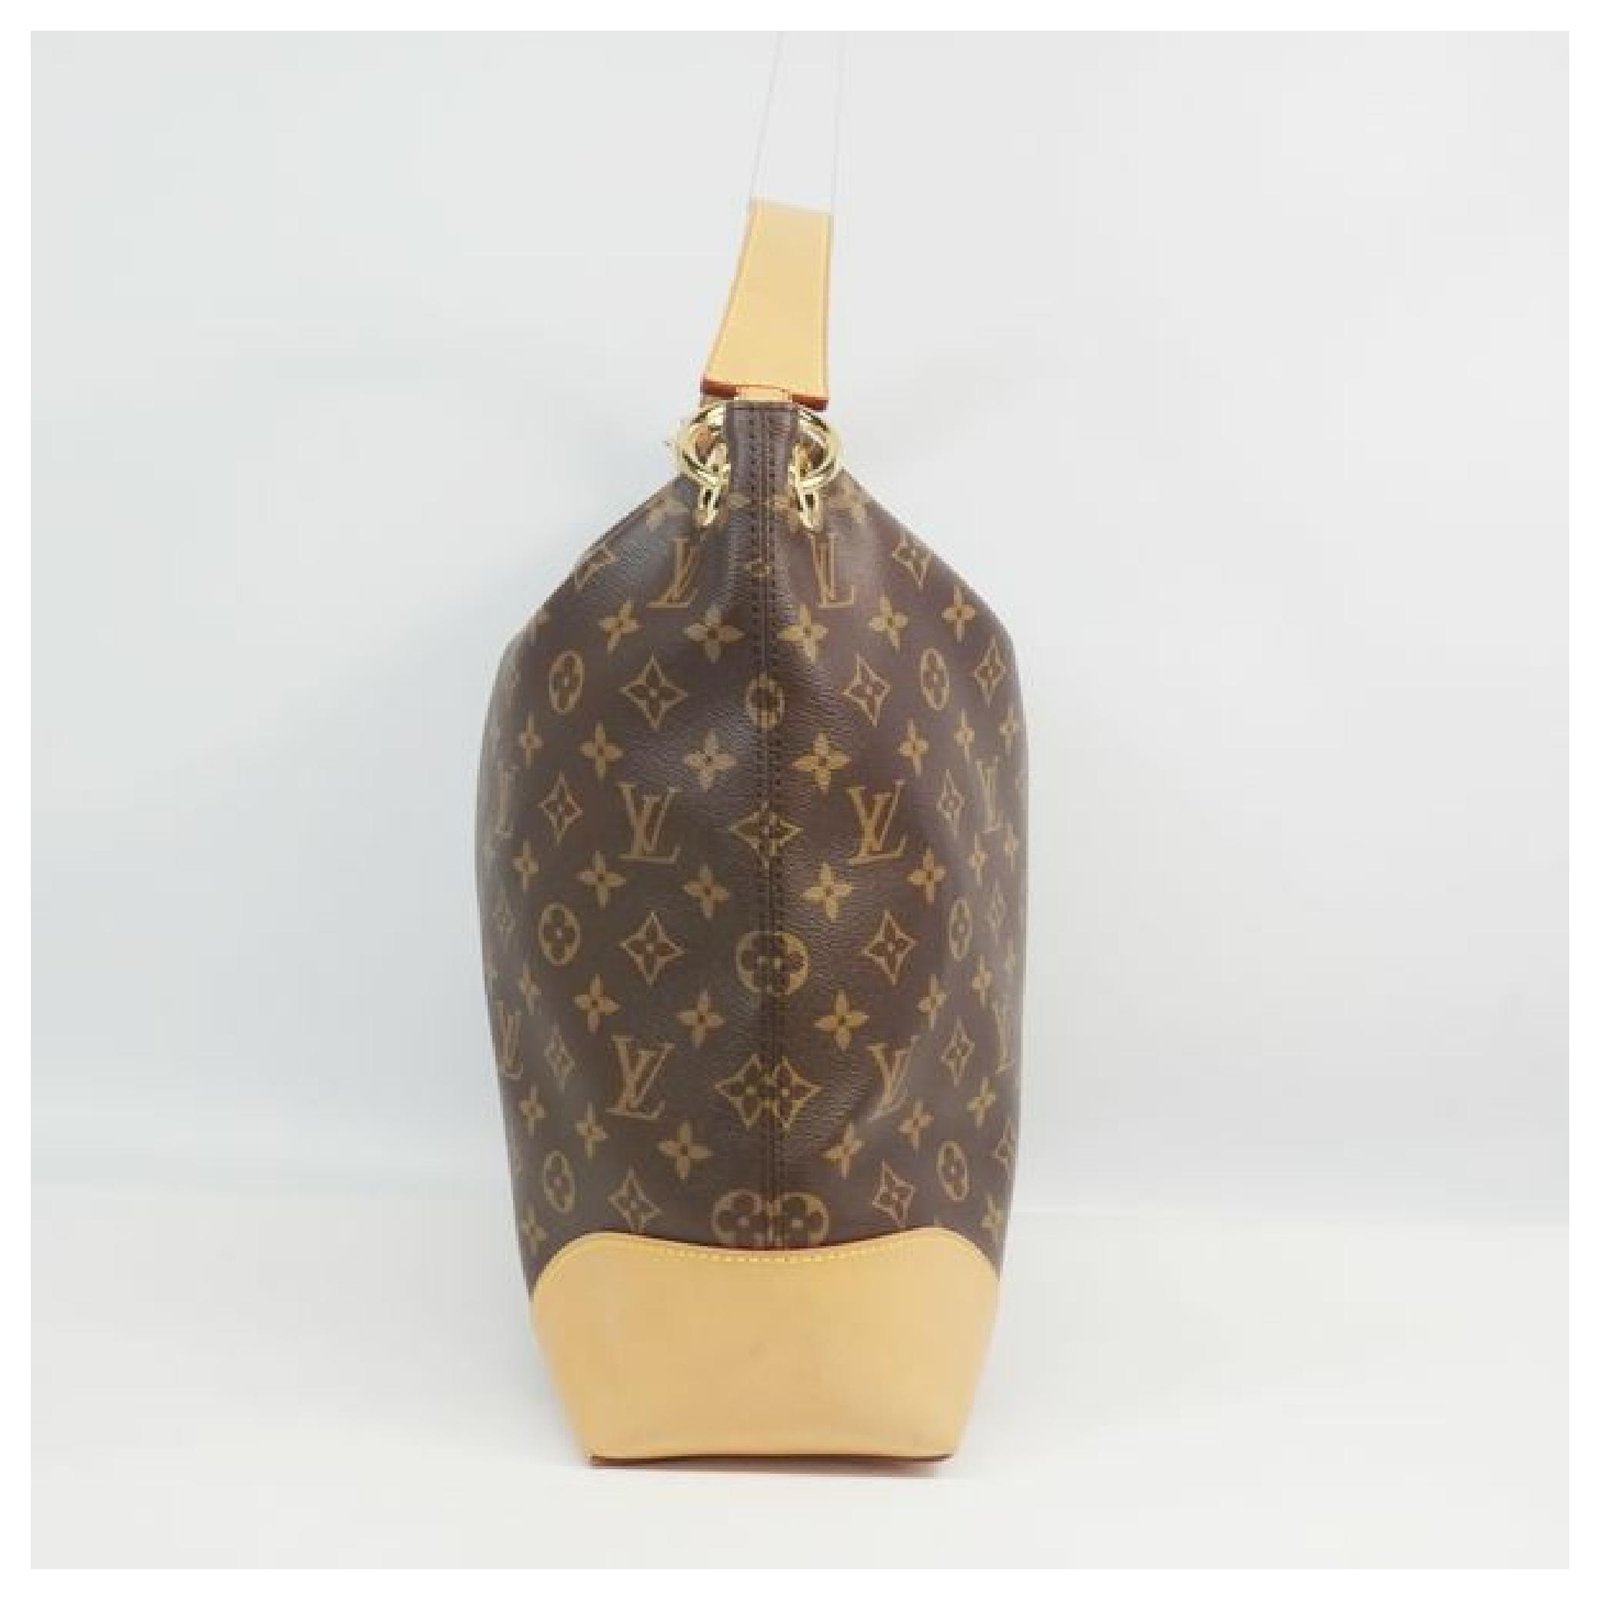 Louis Vuitton Berri Bag, Bragmybag